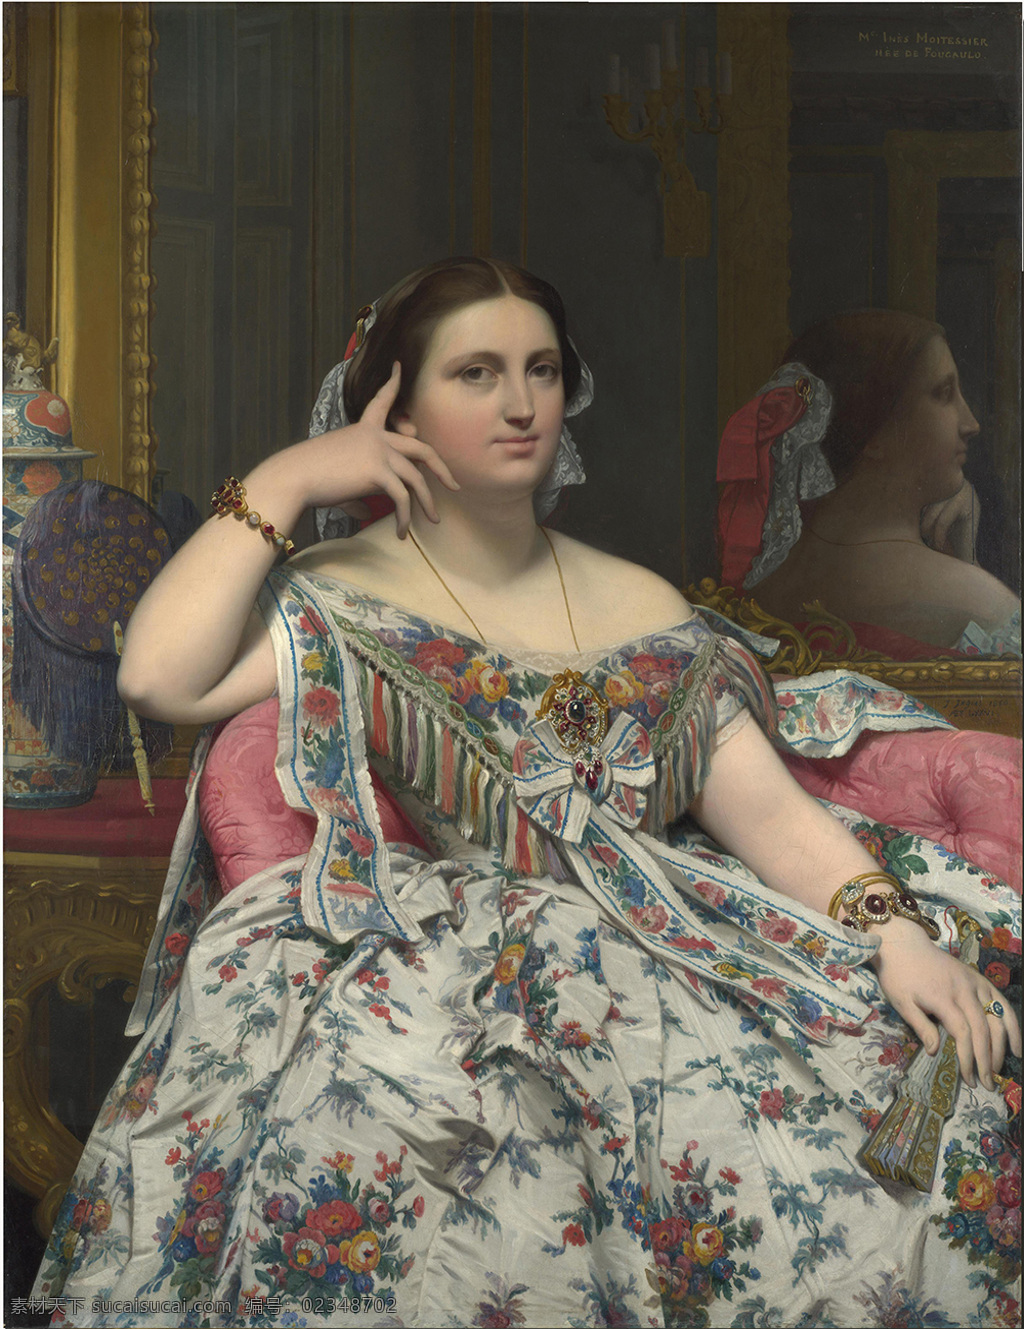 静坐 穆 瓦特 雪 耶 夫人 安格尔 油画 人物 法国 雪耶夫人 文化艺术 绘画书法